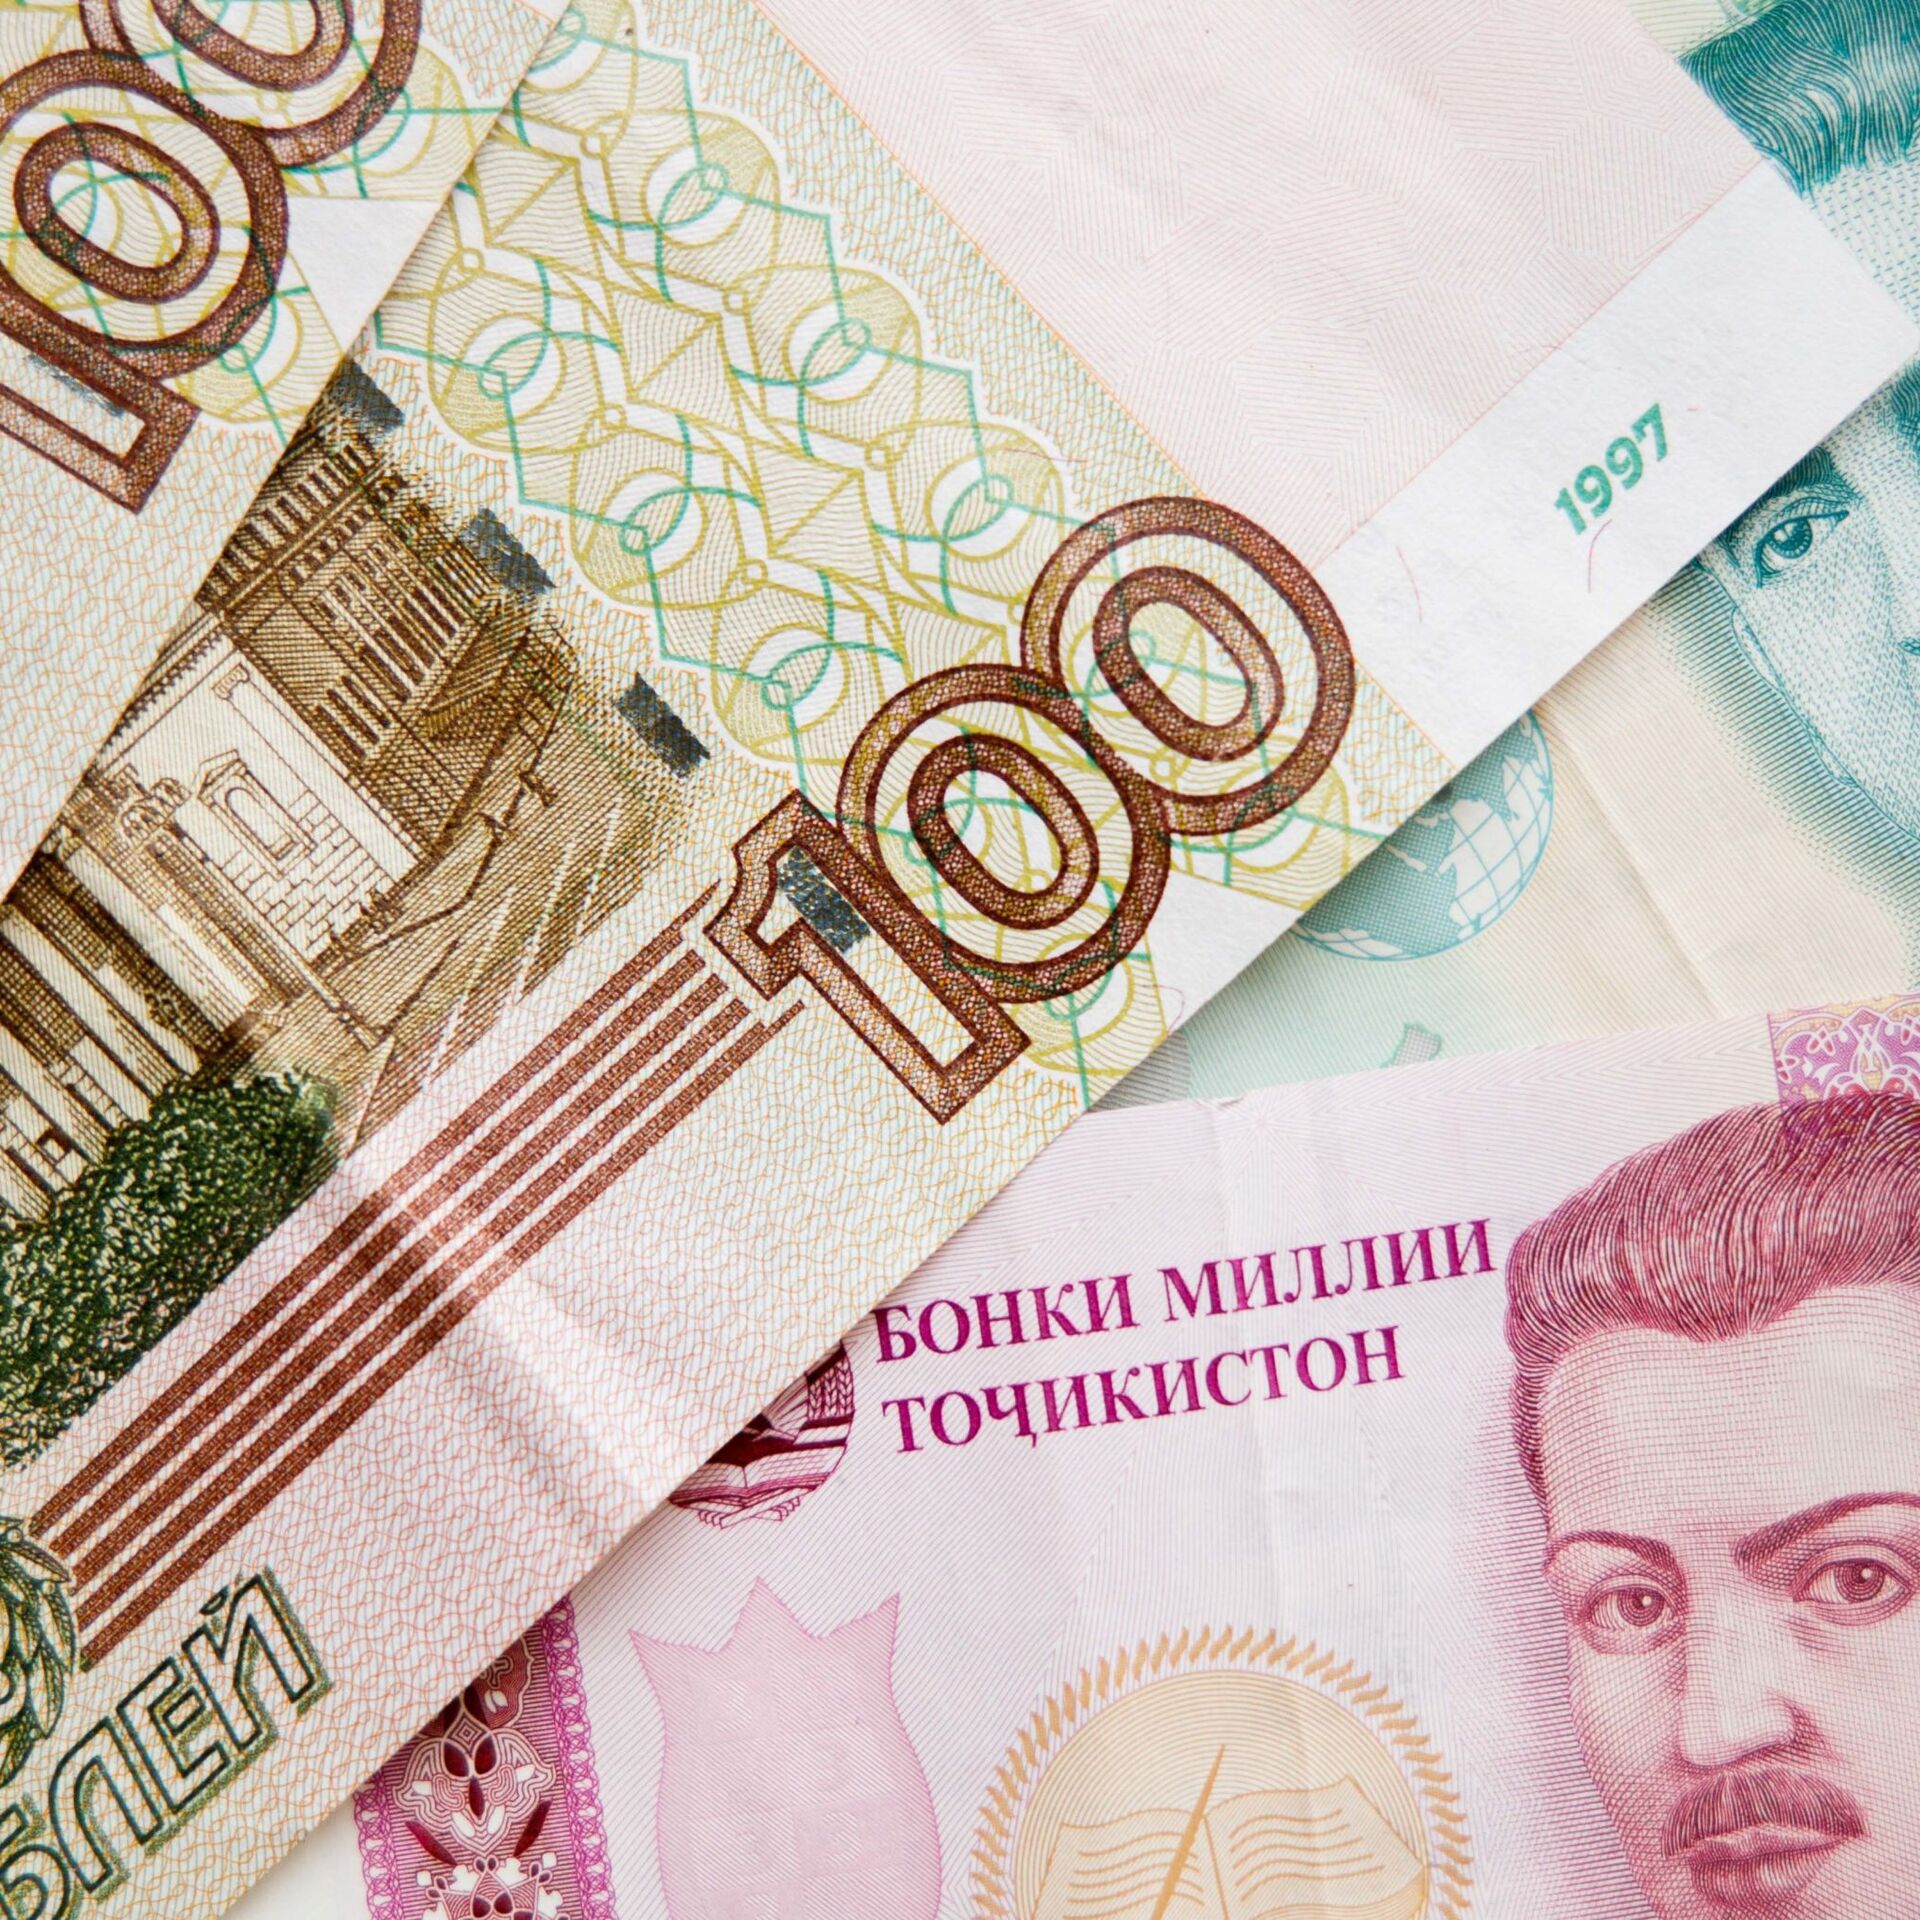 1000 таджик. Валюта Таджикистана. Таджикская валюта. Рубль на Сомони. 500 Сомони.